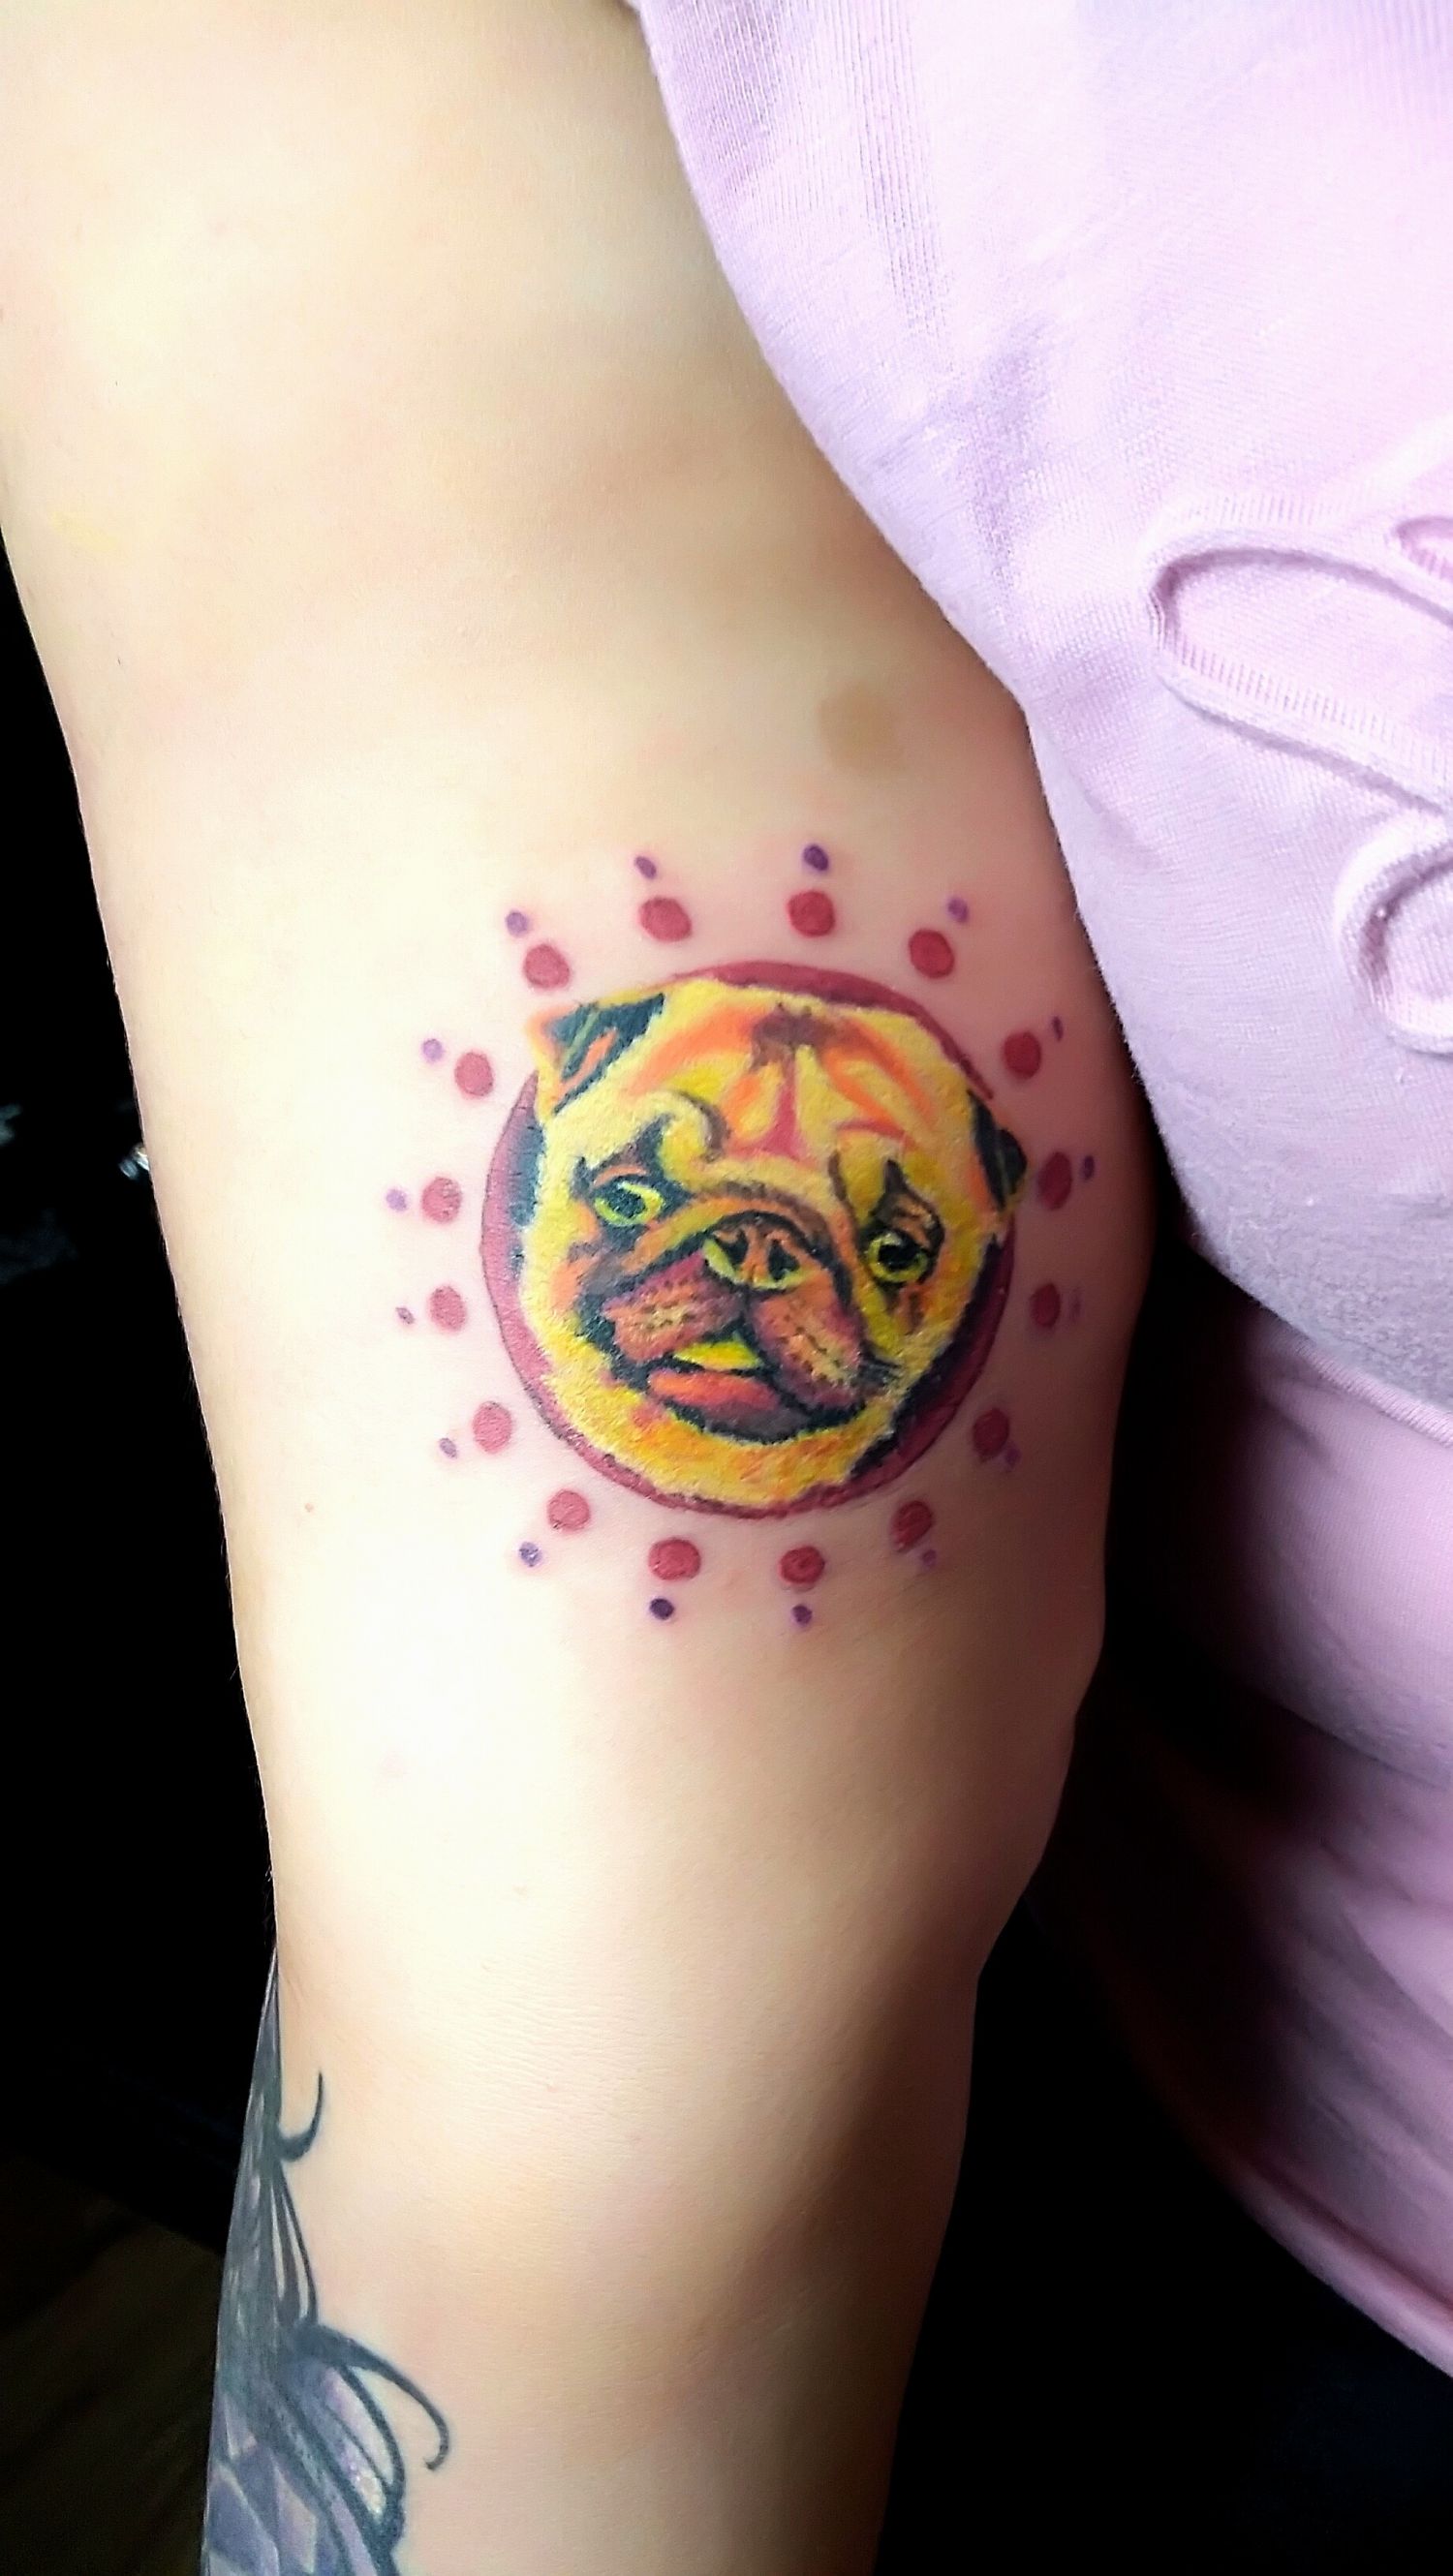 Állat tetoválás, Fantázia tetoválás, Felkar tetoválás, Színes tetoválás